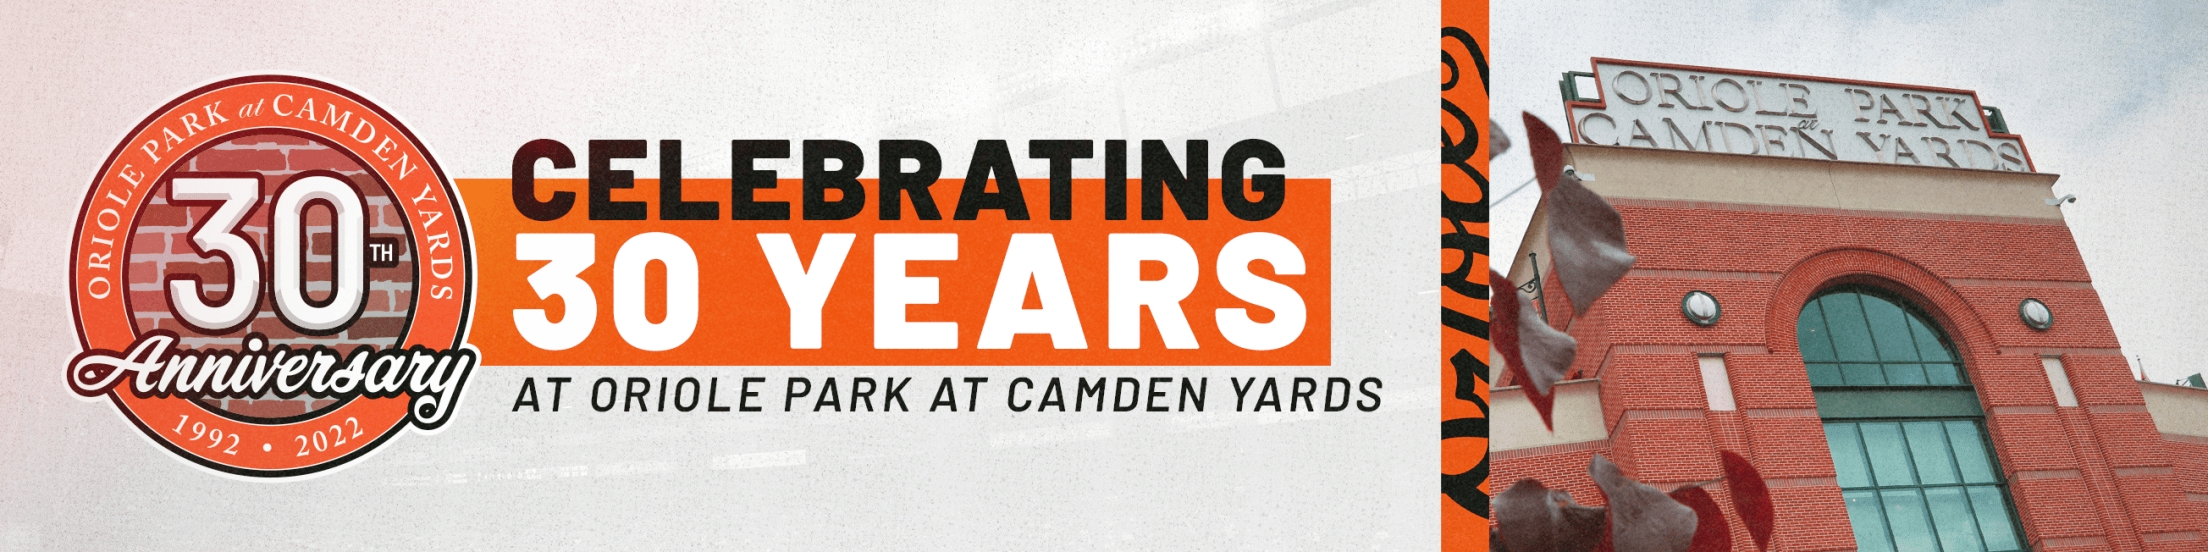 30th Anniversary of Camden Yards